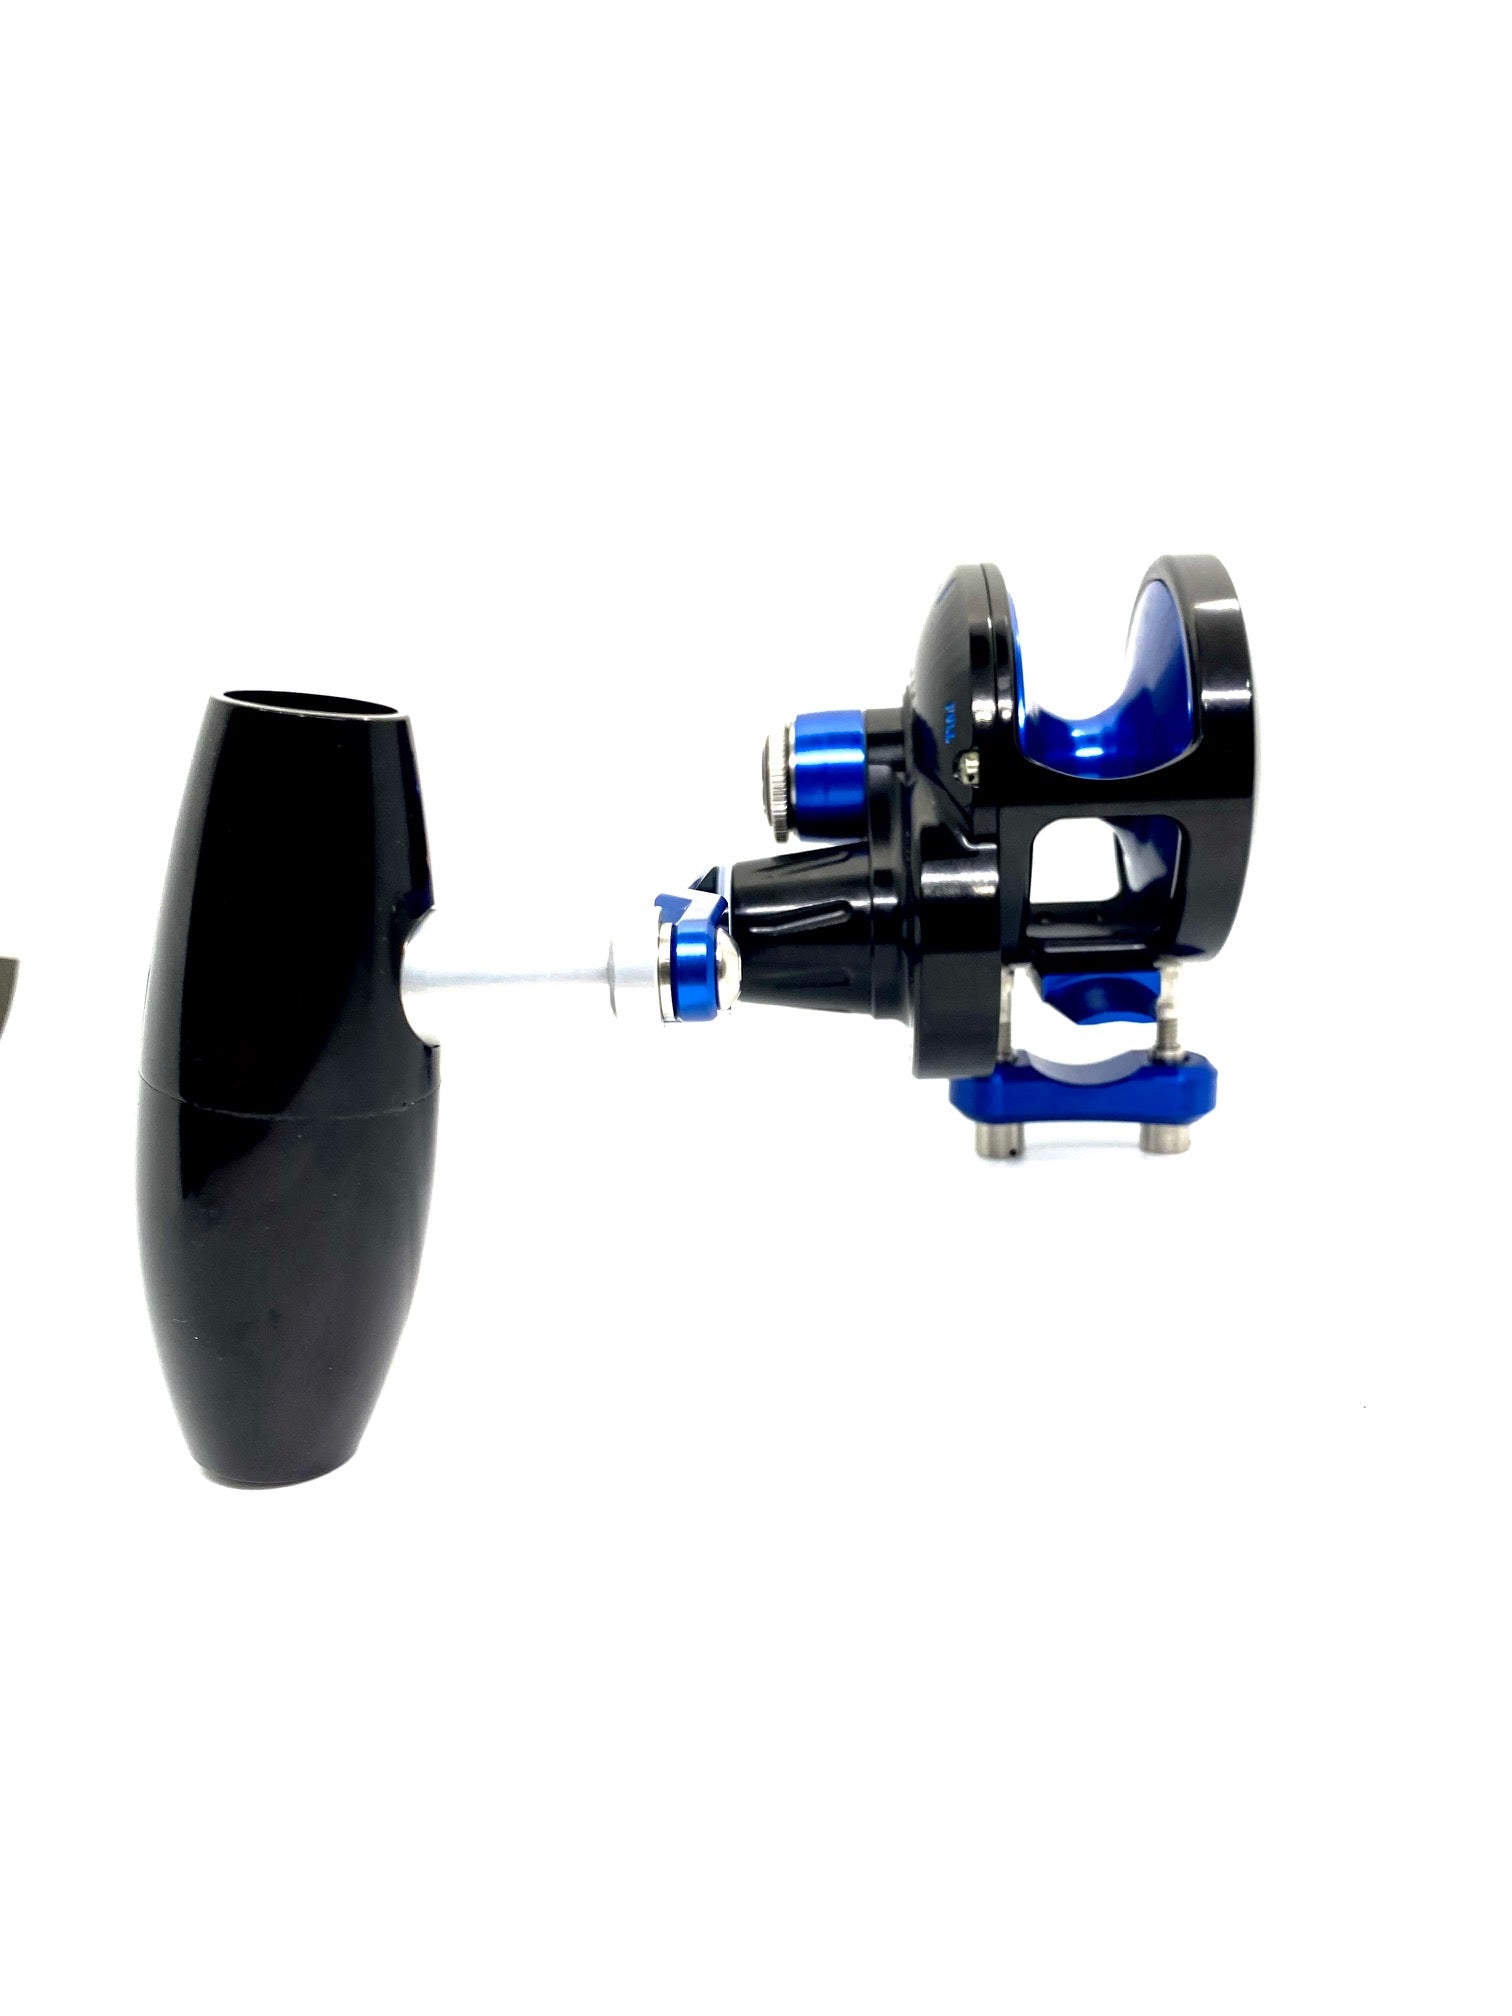 Slow Pitch Jigging Reel - Accurate - Valiant 500N SPJ Custom Black & Blue